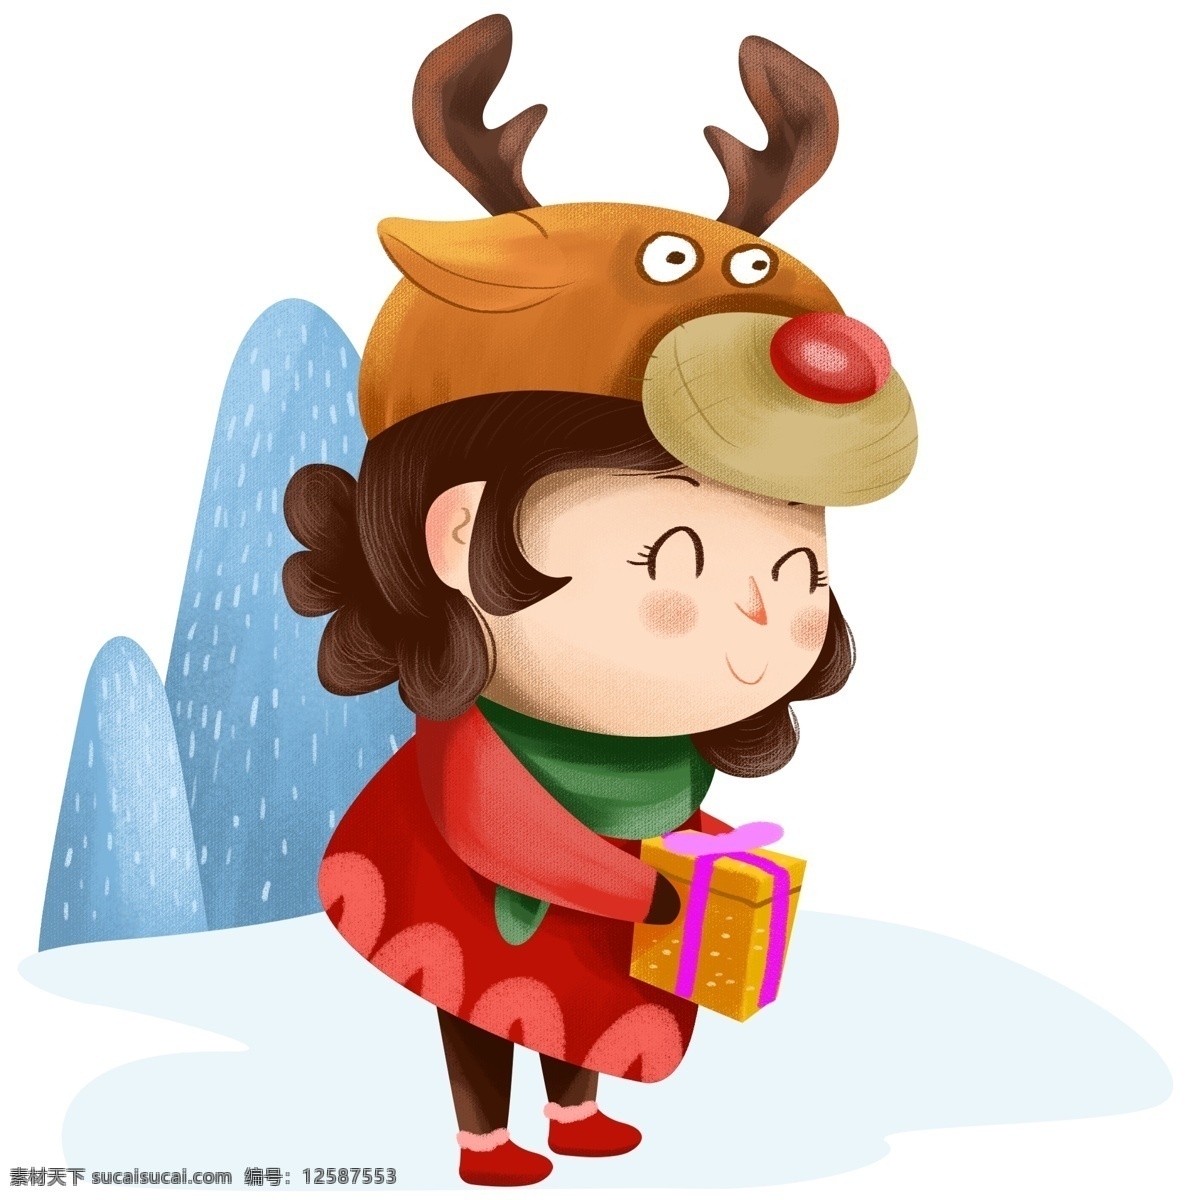 圣诞节 卡通 手绘 插画 圣诞节快乐 圣诞夜 收礼物 驯鹿 驯鹿女孩 圣诞人物手绘 圣诞节人物 圣诞